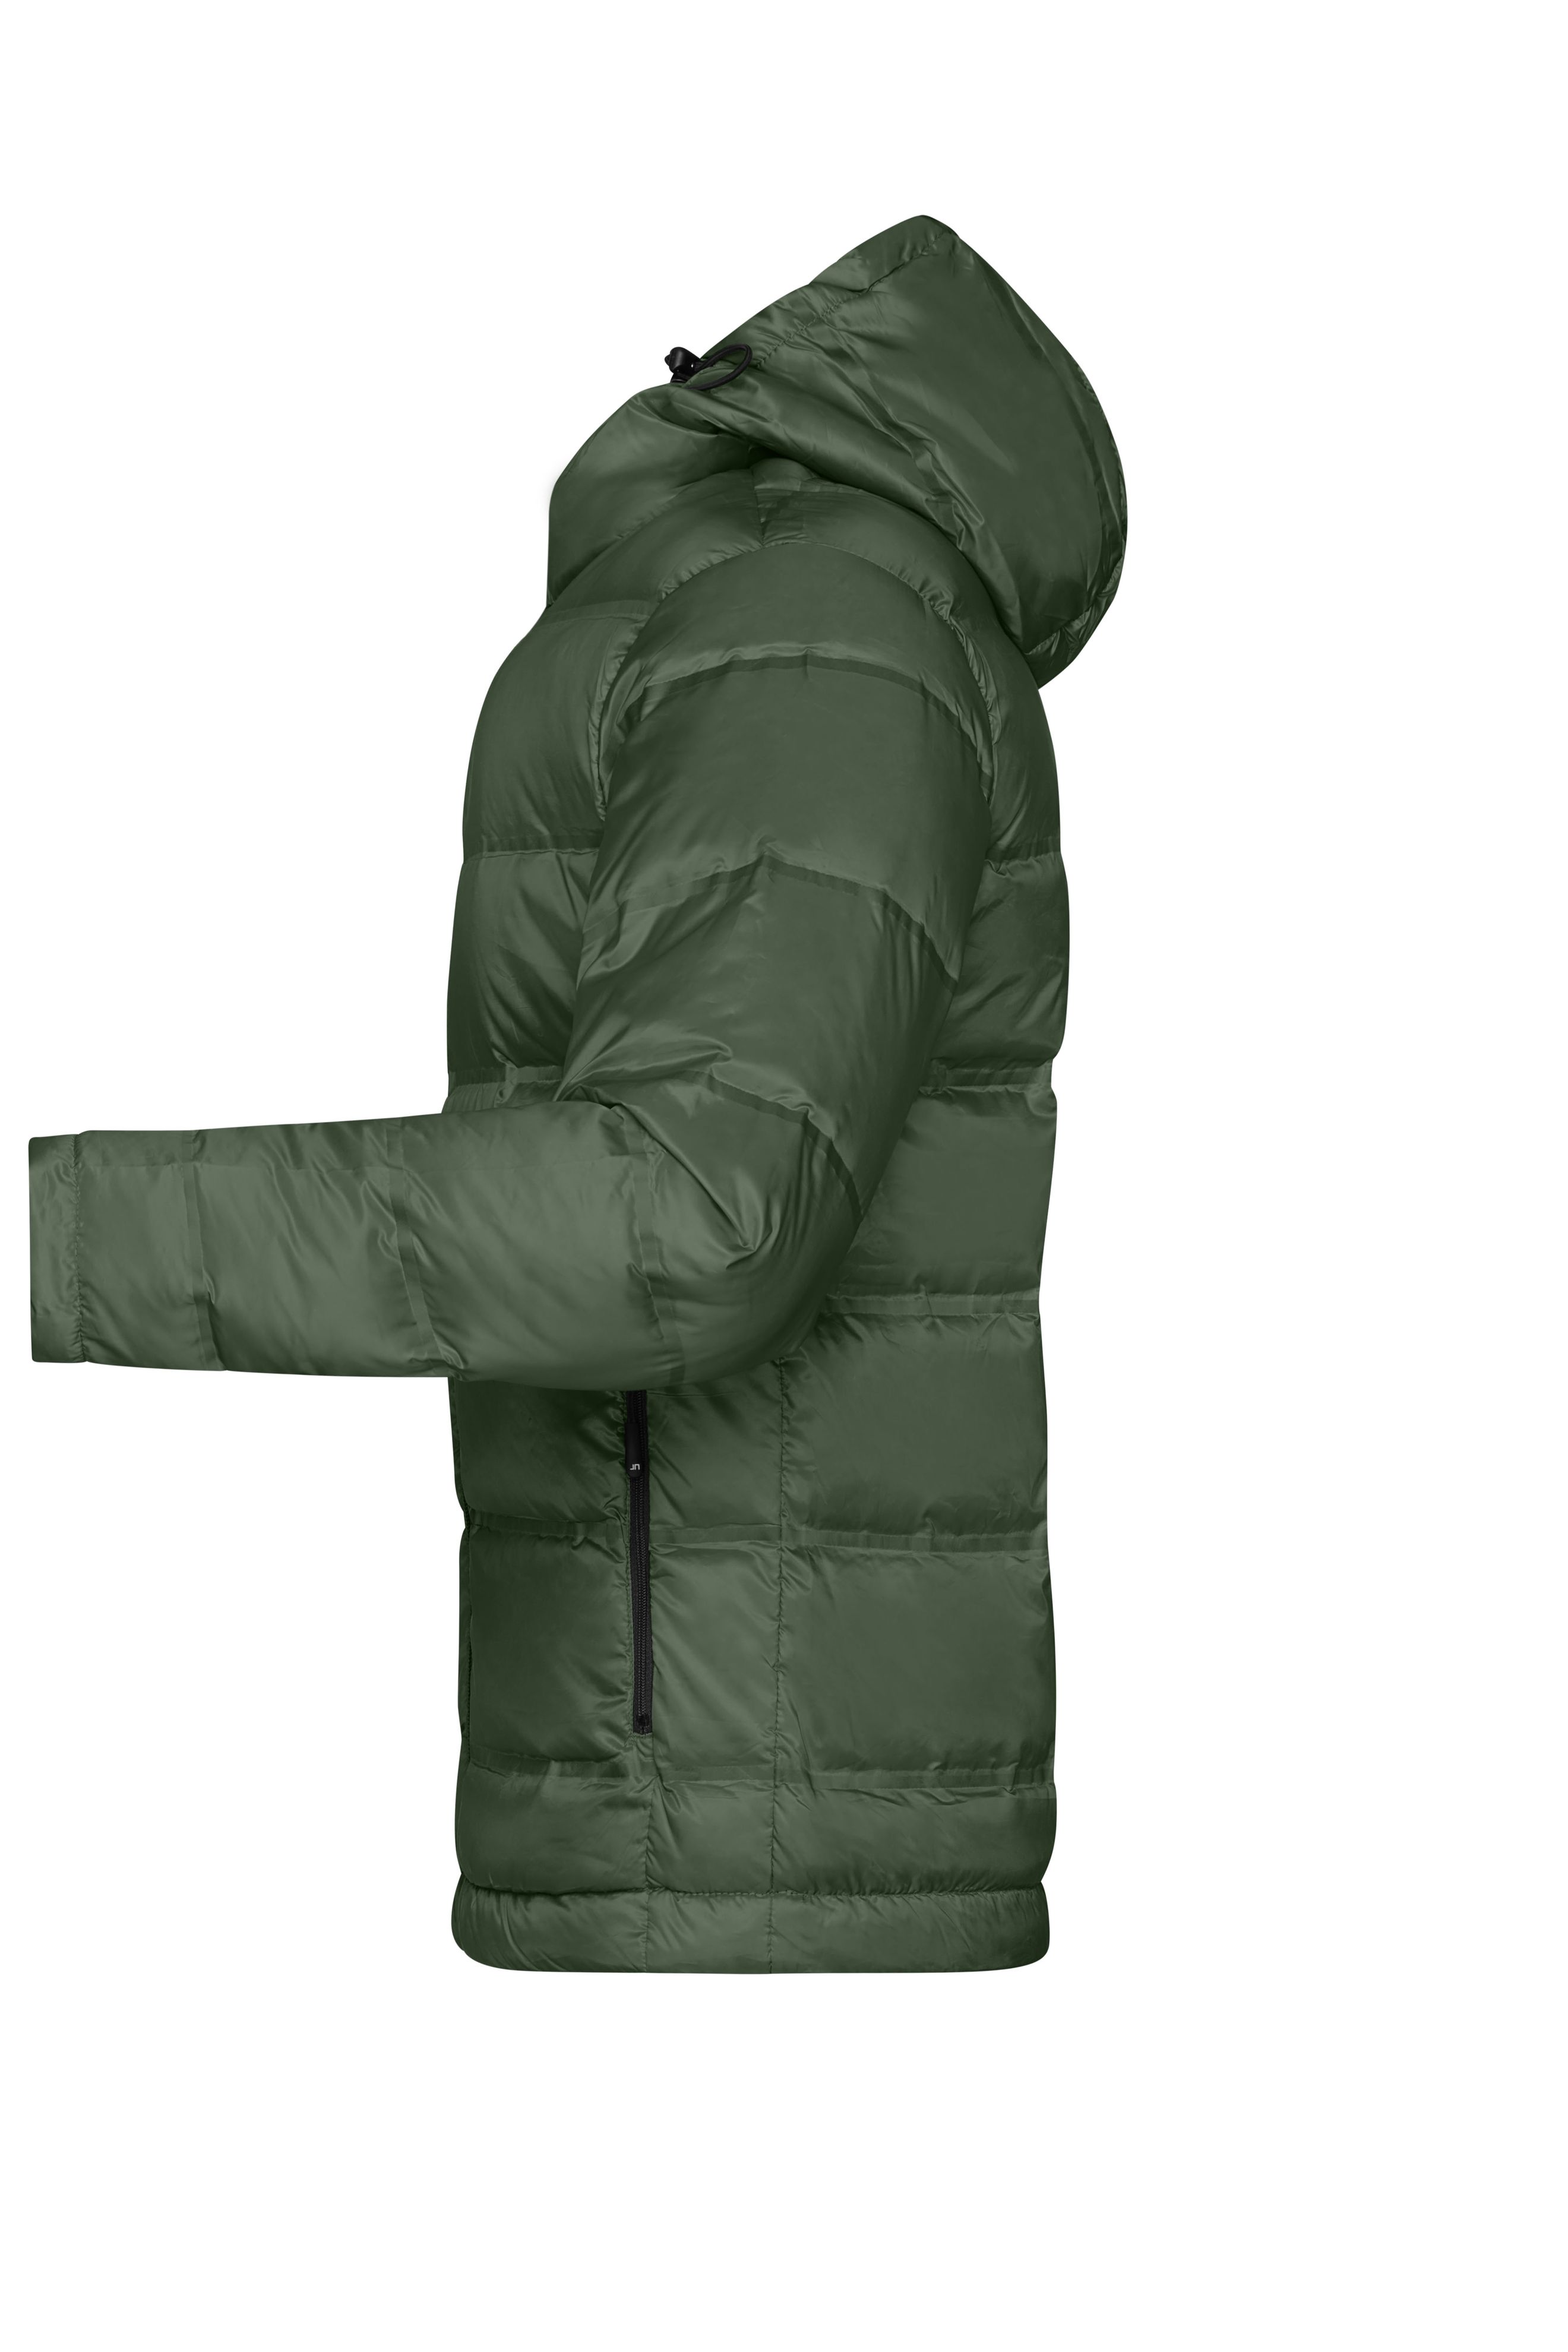 Men's Hooded Down Jacket JN1152 Daunenjacke mit Kapuze in neuem Design, Steppung der Jacke ist geklebt und nicht genäht